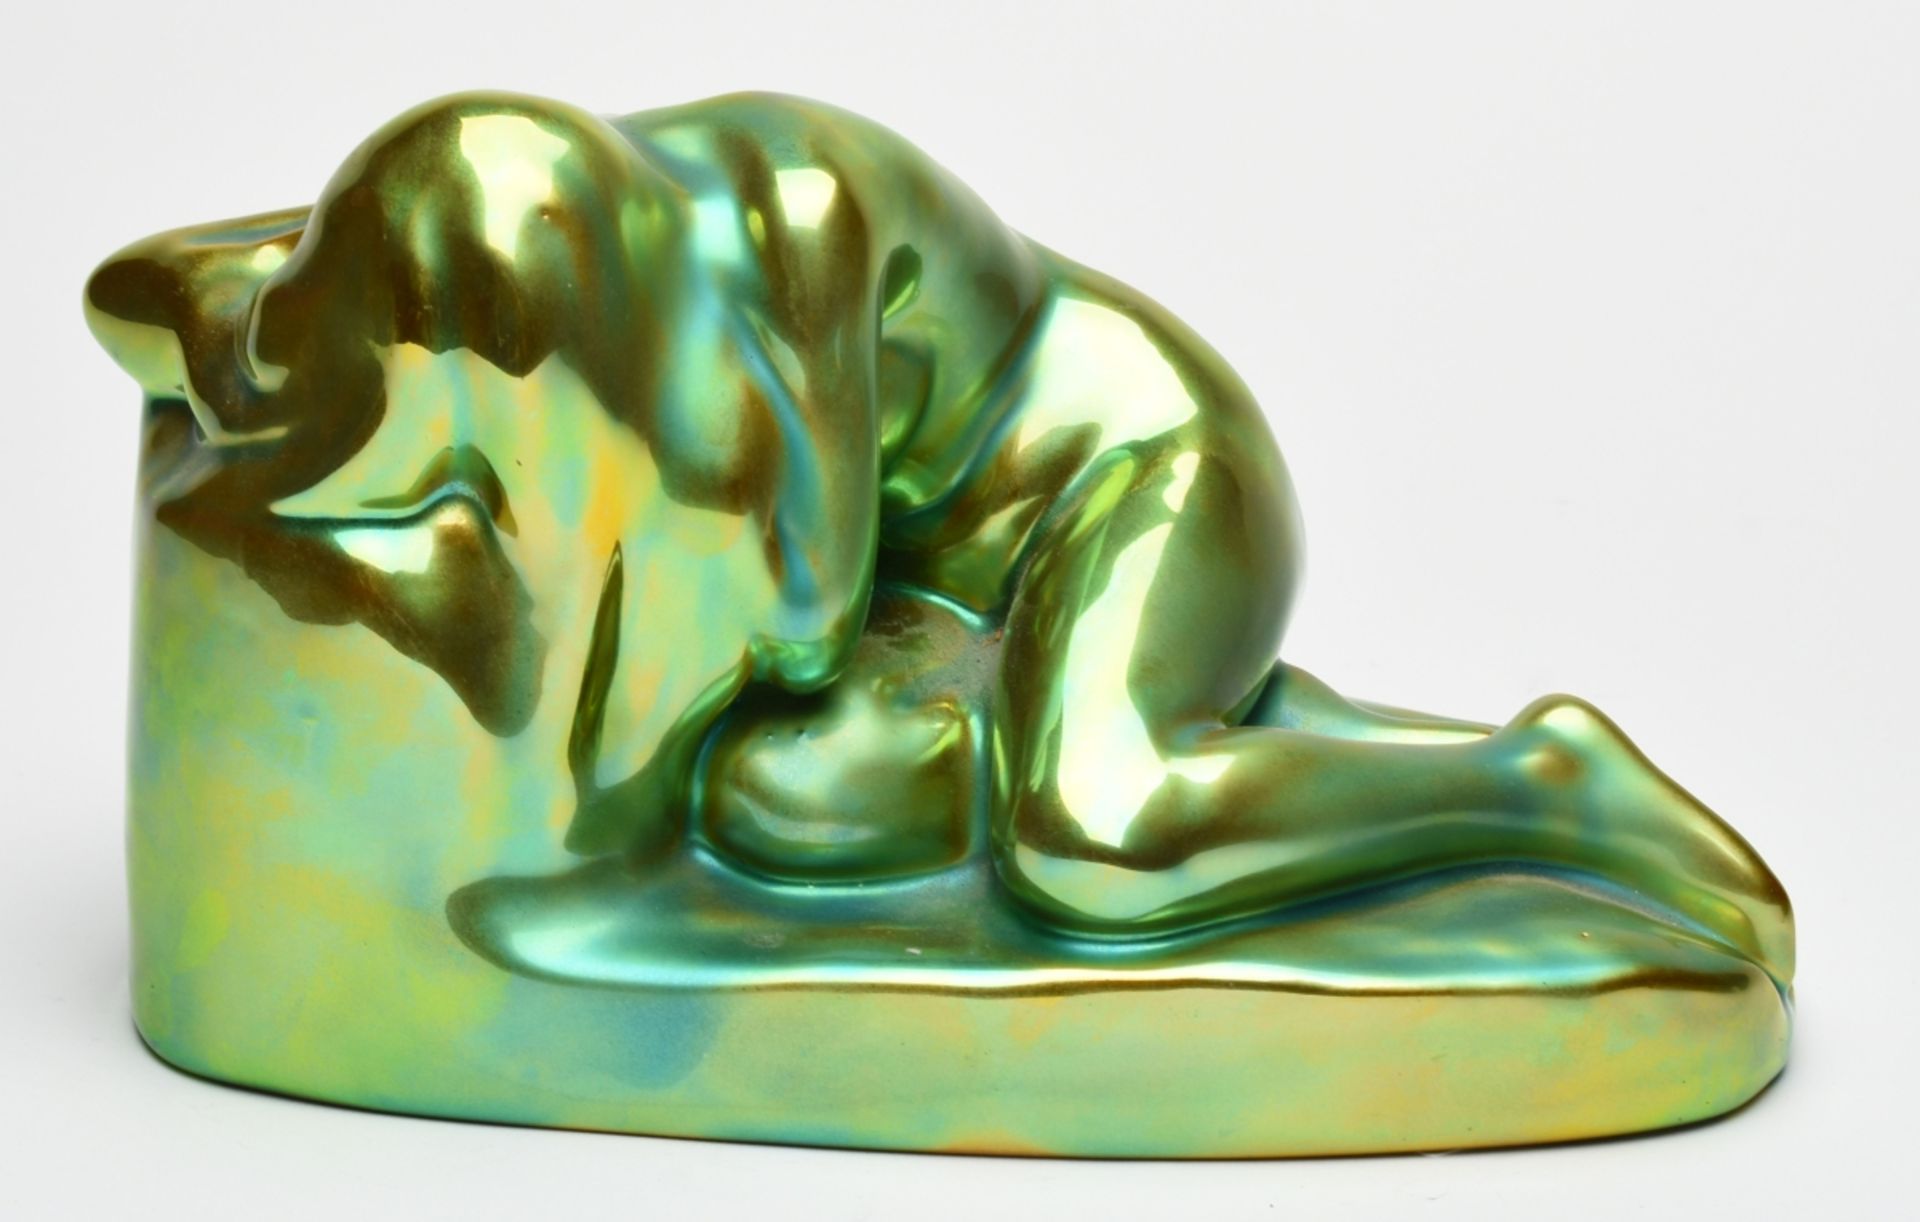 Aktfigur Hersteller: Zsolnay, Pecs/Ungarn, Keramik, in leuchtendem Grün-Gelb glasiert, liegender - Bild 2 aus 4